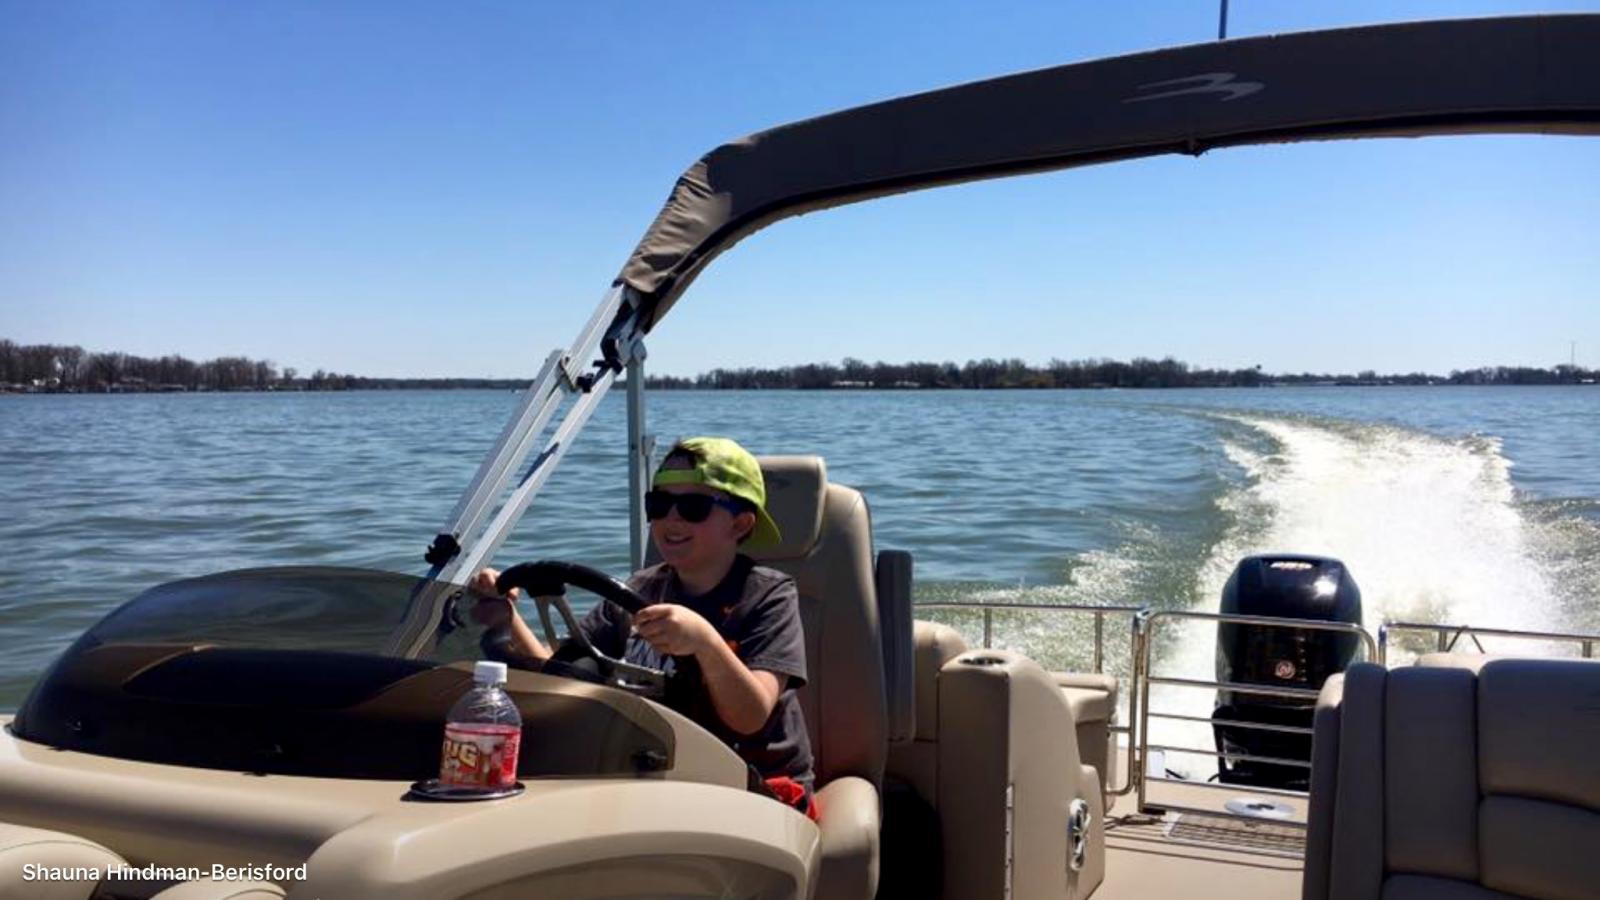 Blake driving on Indian Lake